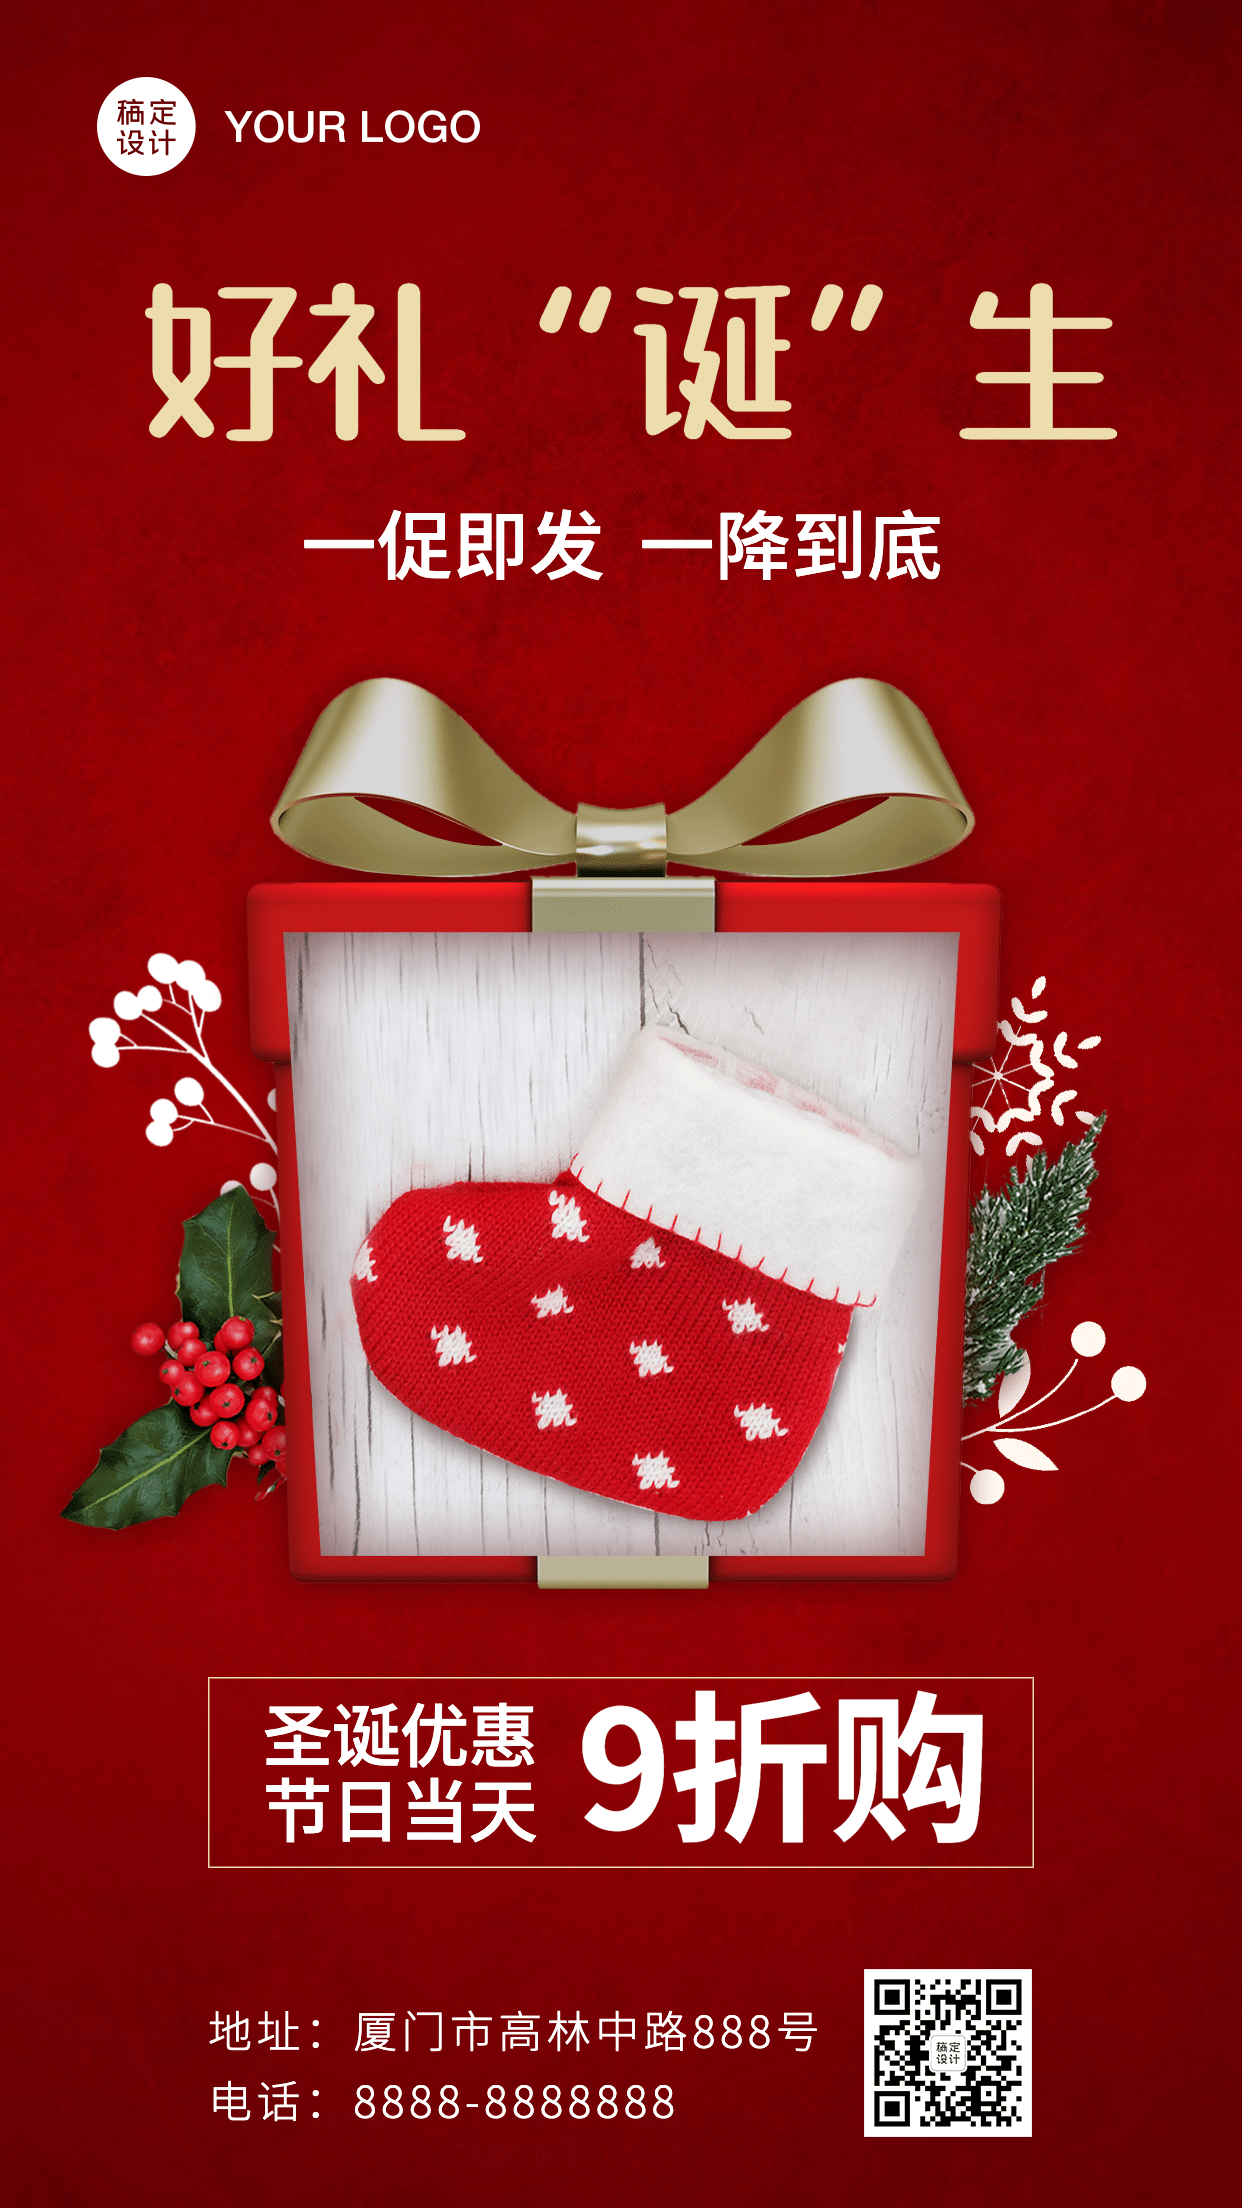 圣诞节产品活动福利促销手机海报预览效果